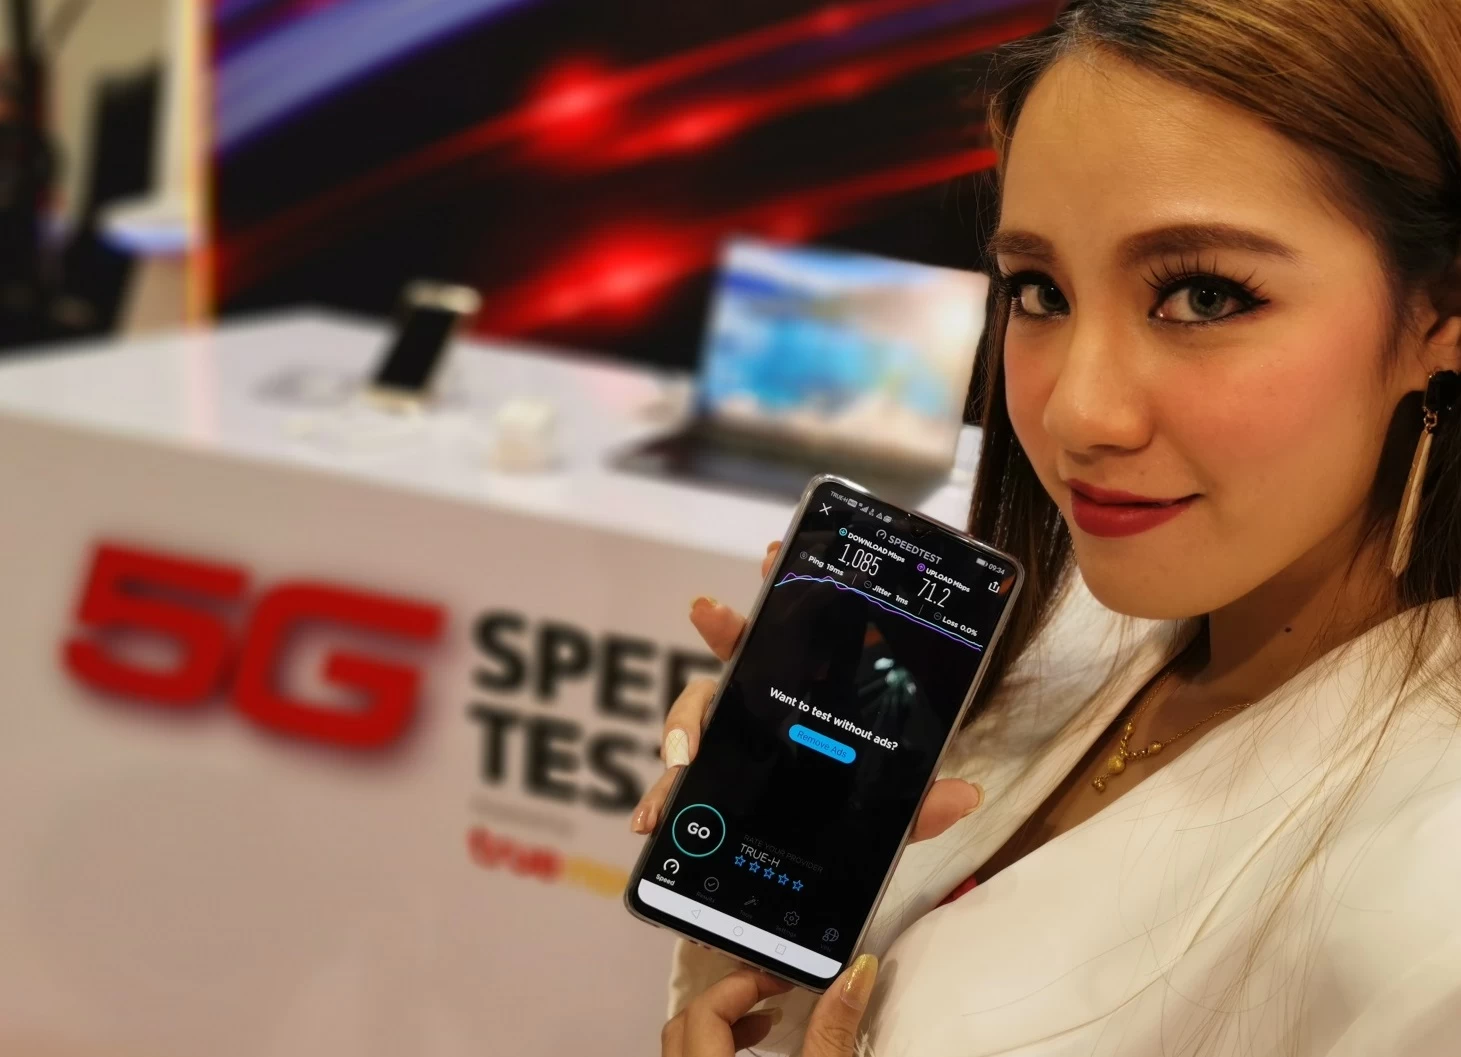 Huawei 5G 1 1 | Huawei | อีสานบ้านเฮาทดสอบใช้ 5G กันแล้วเด้อ! 'หัวเว่ยและทรู' นำ 5G บุกอีสาน โชว์ประสบการณ์ใช้งาน 5G สุดล้ำในงานหอการค้าแฟร์ 2019